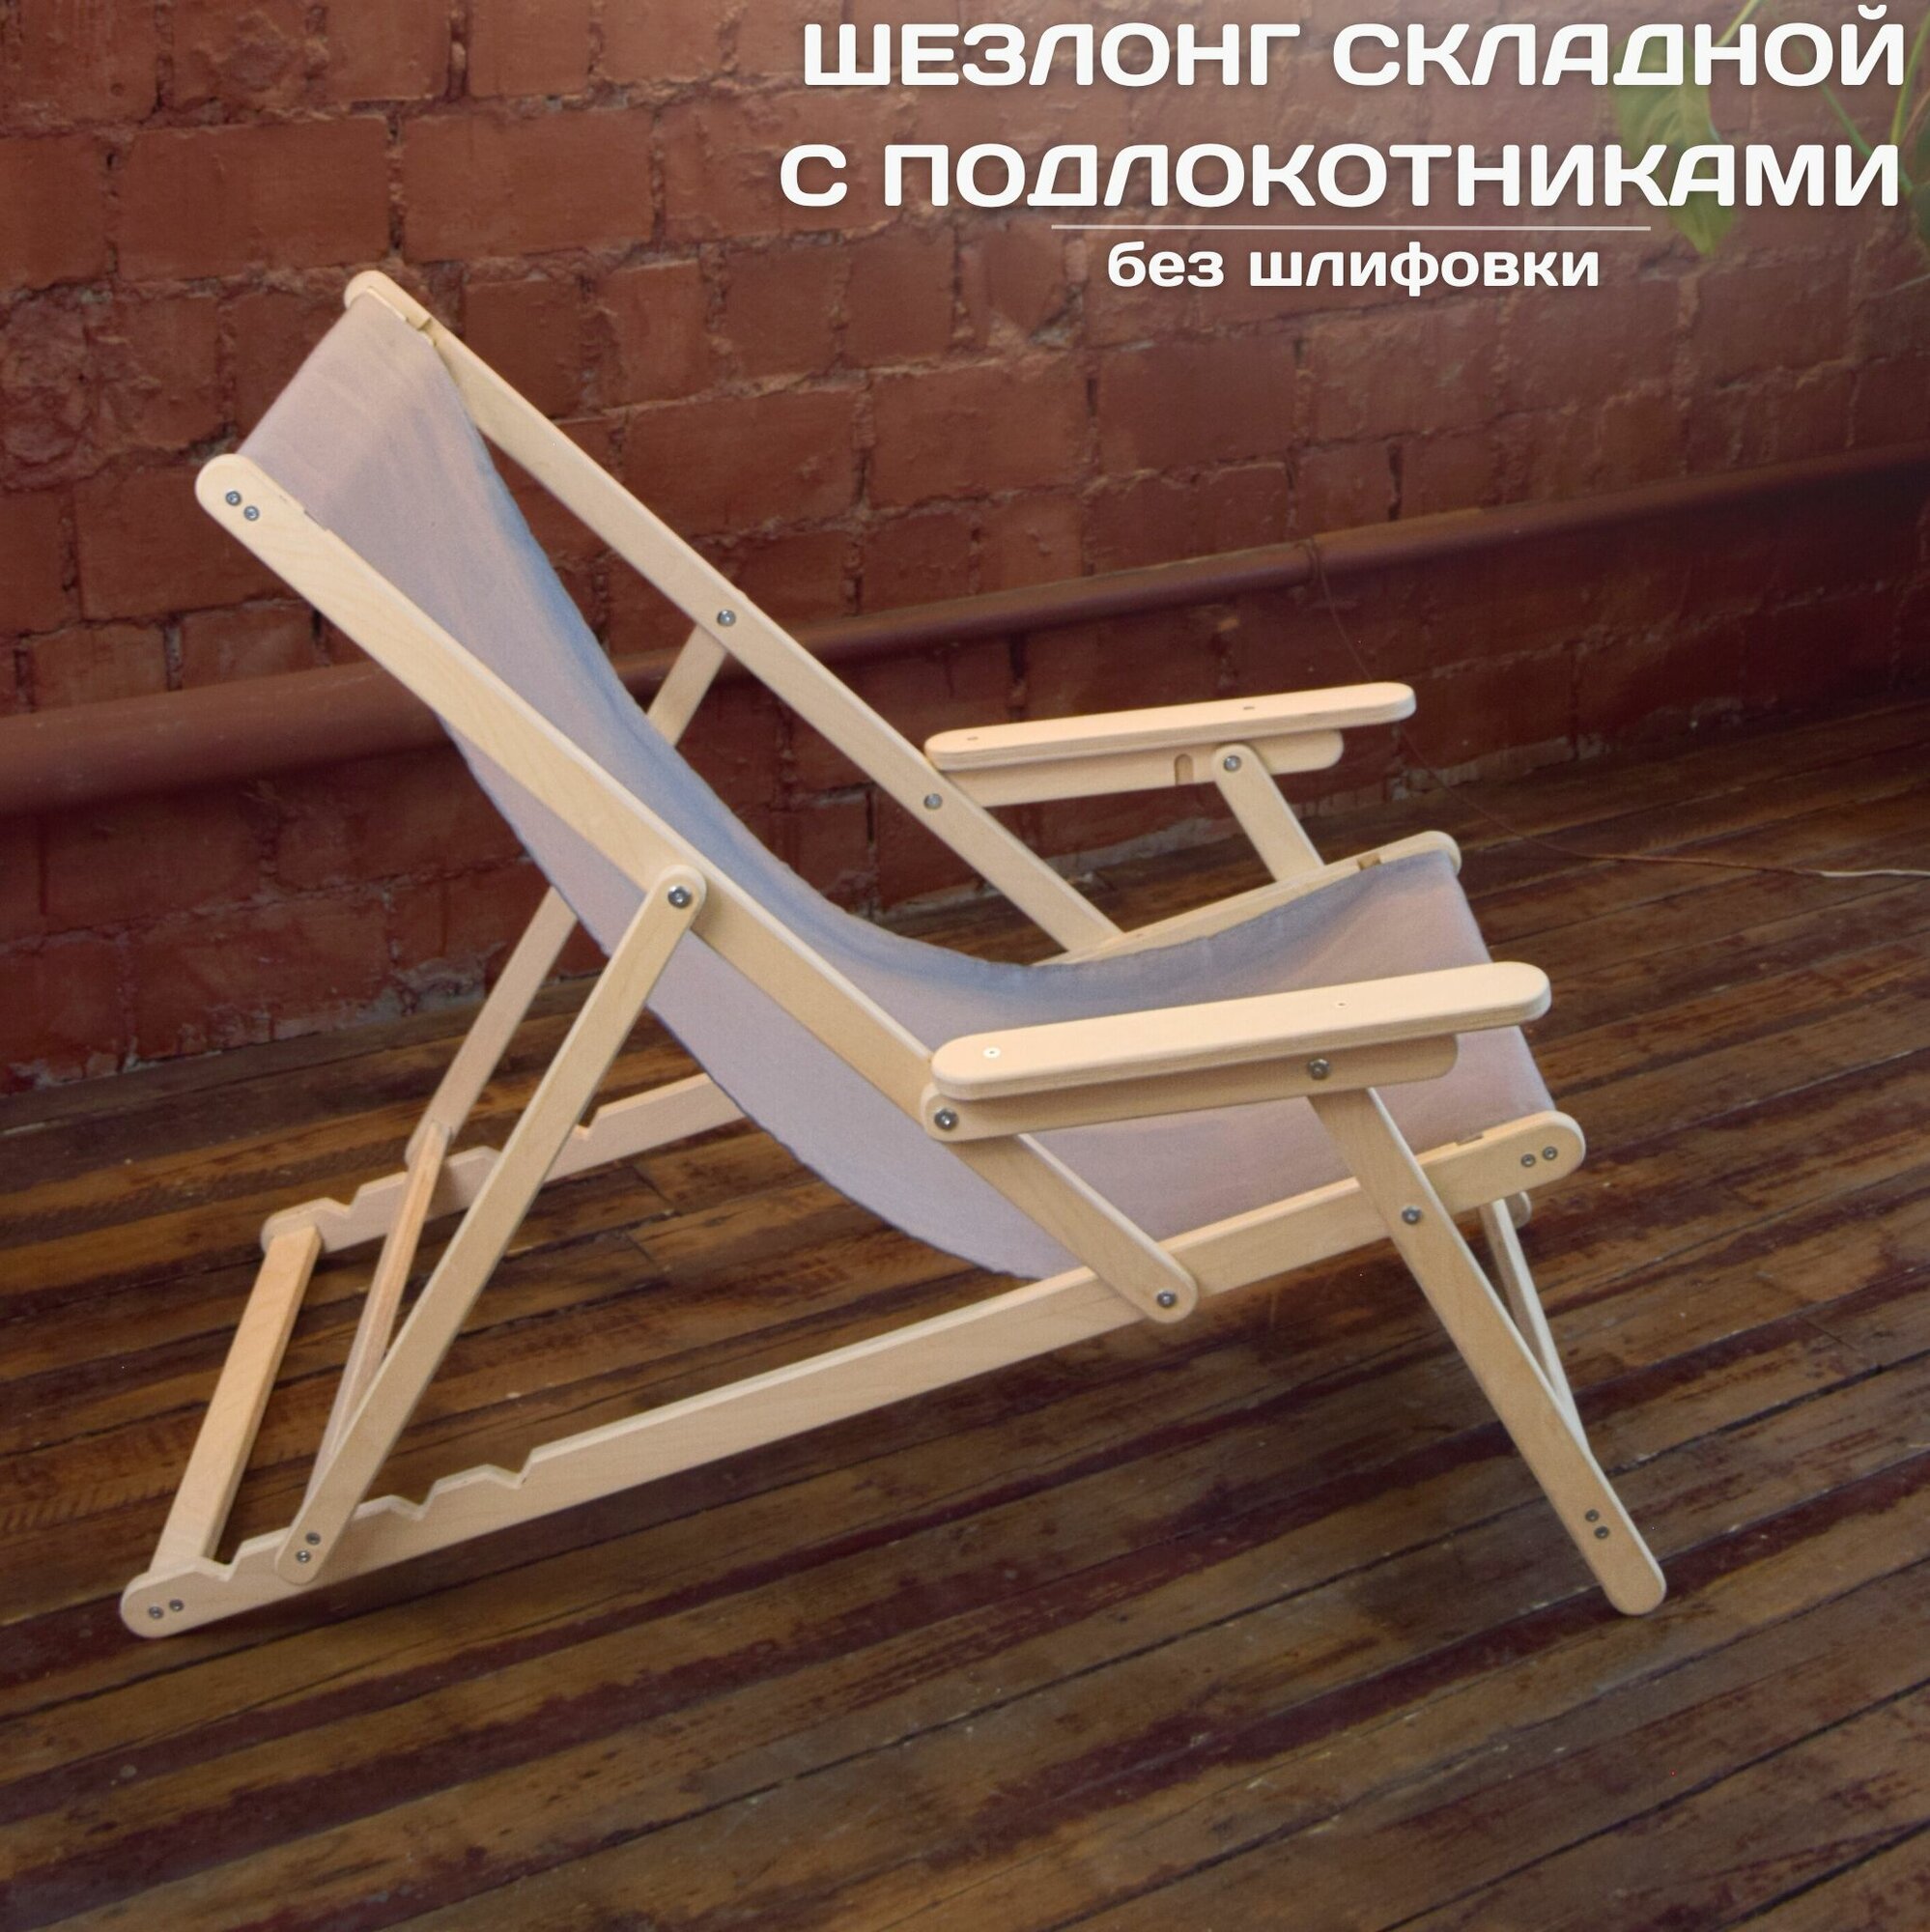 Кресло-шезлонг с подлокотниками, деревянный складной шезлонг для дома и загородного отдыха, без шлифовки с серой тканью